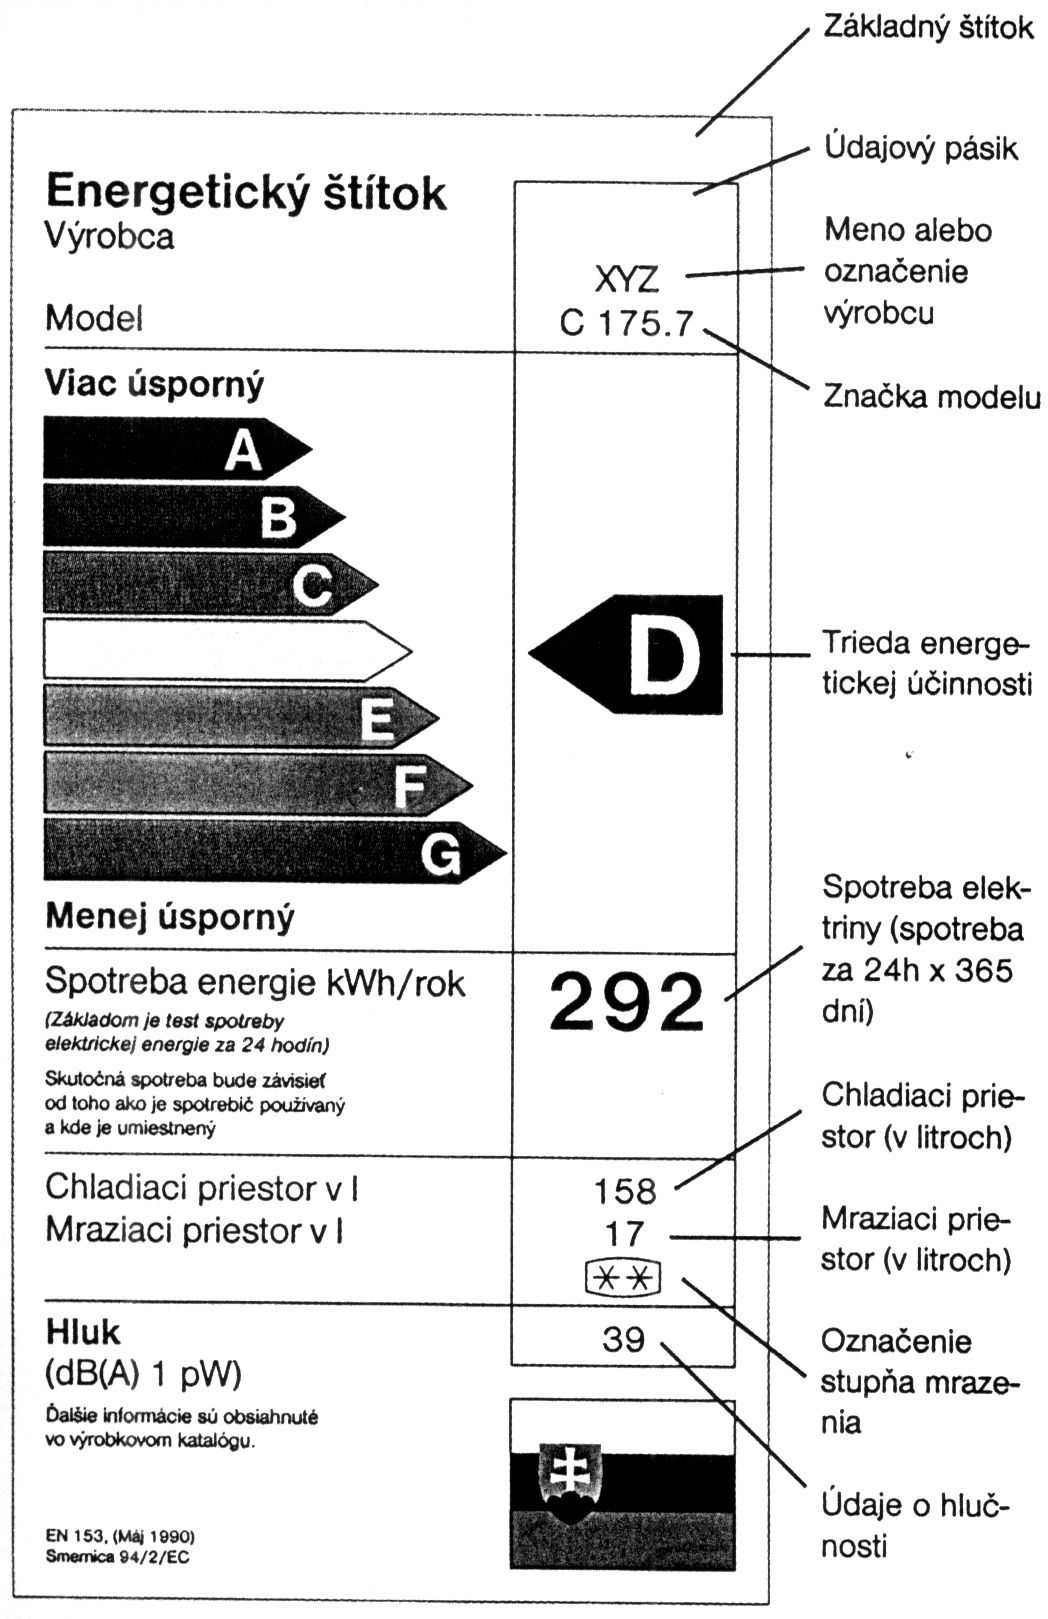 10.4.1 Energetické štítkovanie (Labelling) Európska únia prijala rámcovú smernicu 92/75/EHS o označovaní úrovne energetickej spotreby domácich elektrospotrebičov, ktorá prikazuje výrobcom